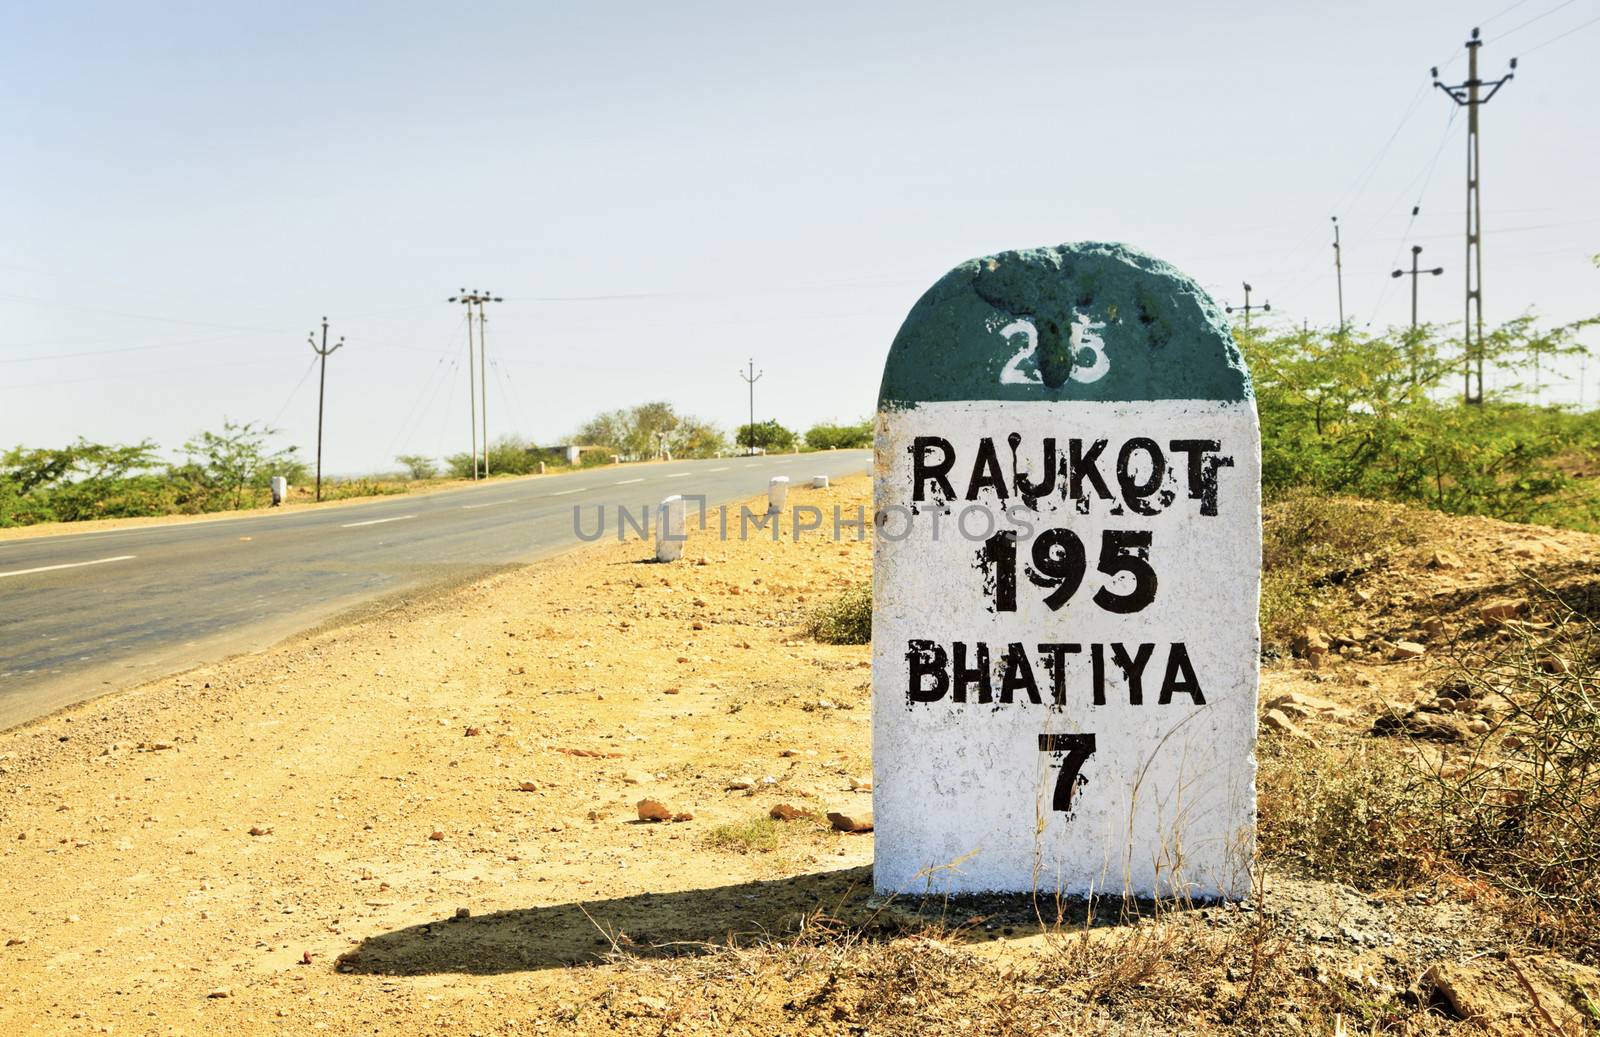 Rajkot 195 milestone on State Highway 25 by arfabita